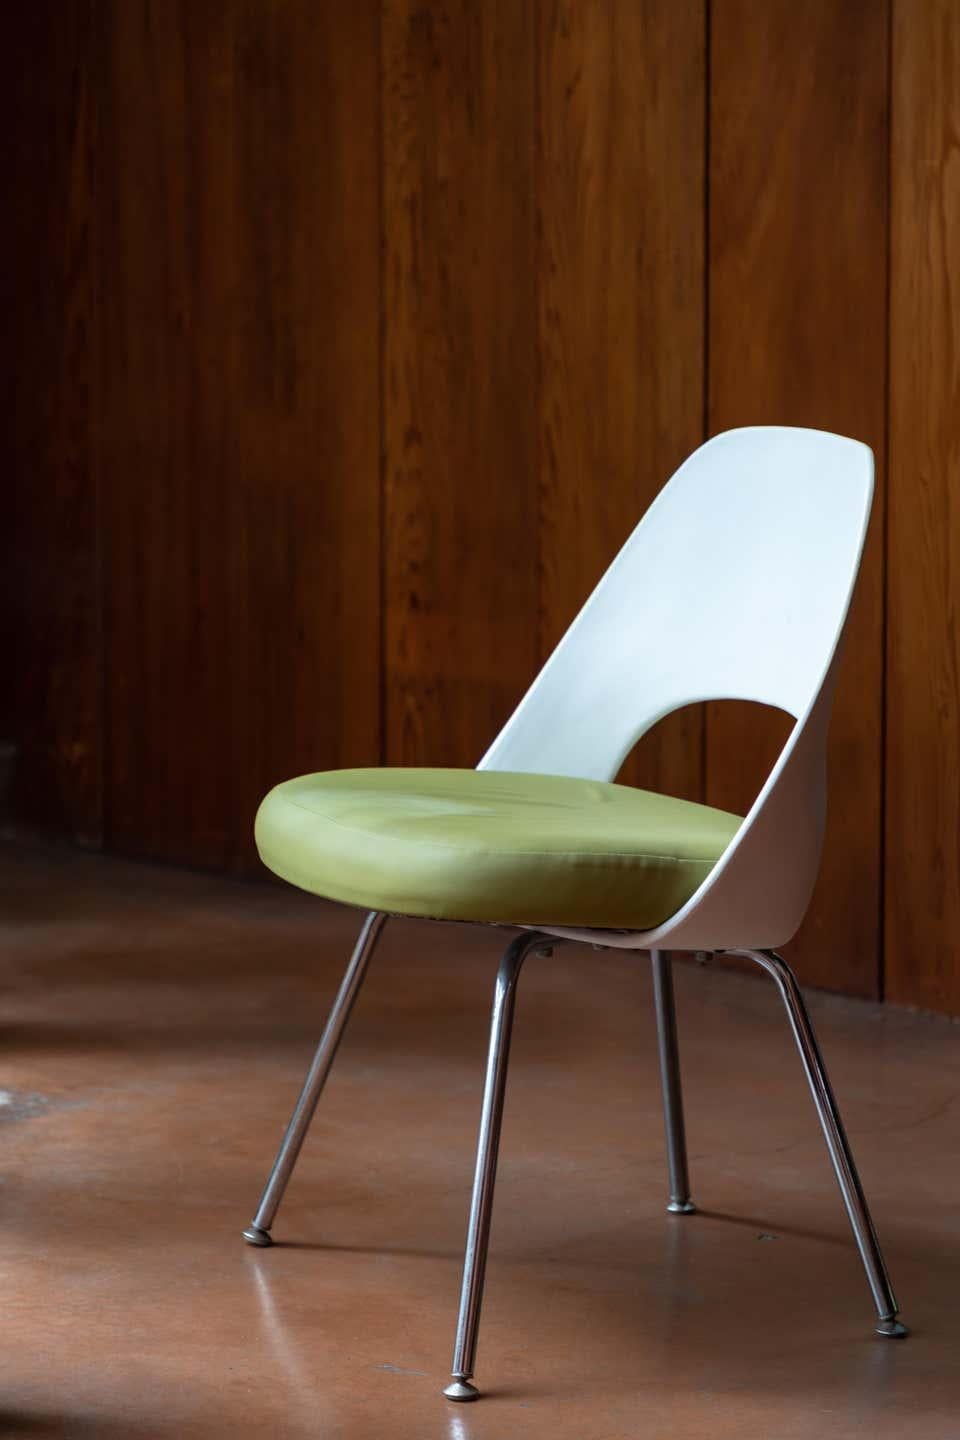 Saarinen Executive Beistellstuhl mit Metallbeinen für Knoll. Der ursprünglich 1946 entworfene Stuhl wurde Ende der 1990er/Anfang der 2000er Jahre in den Farben Grün und Weiß mit dem Knoll-Herstellerstempel in Stoff auf der Unterseite des Stuhls